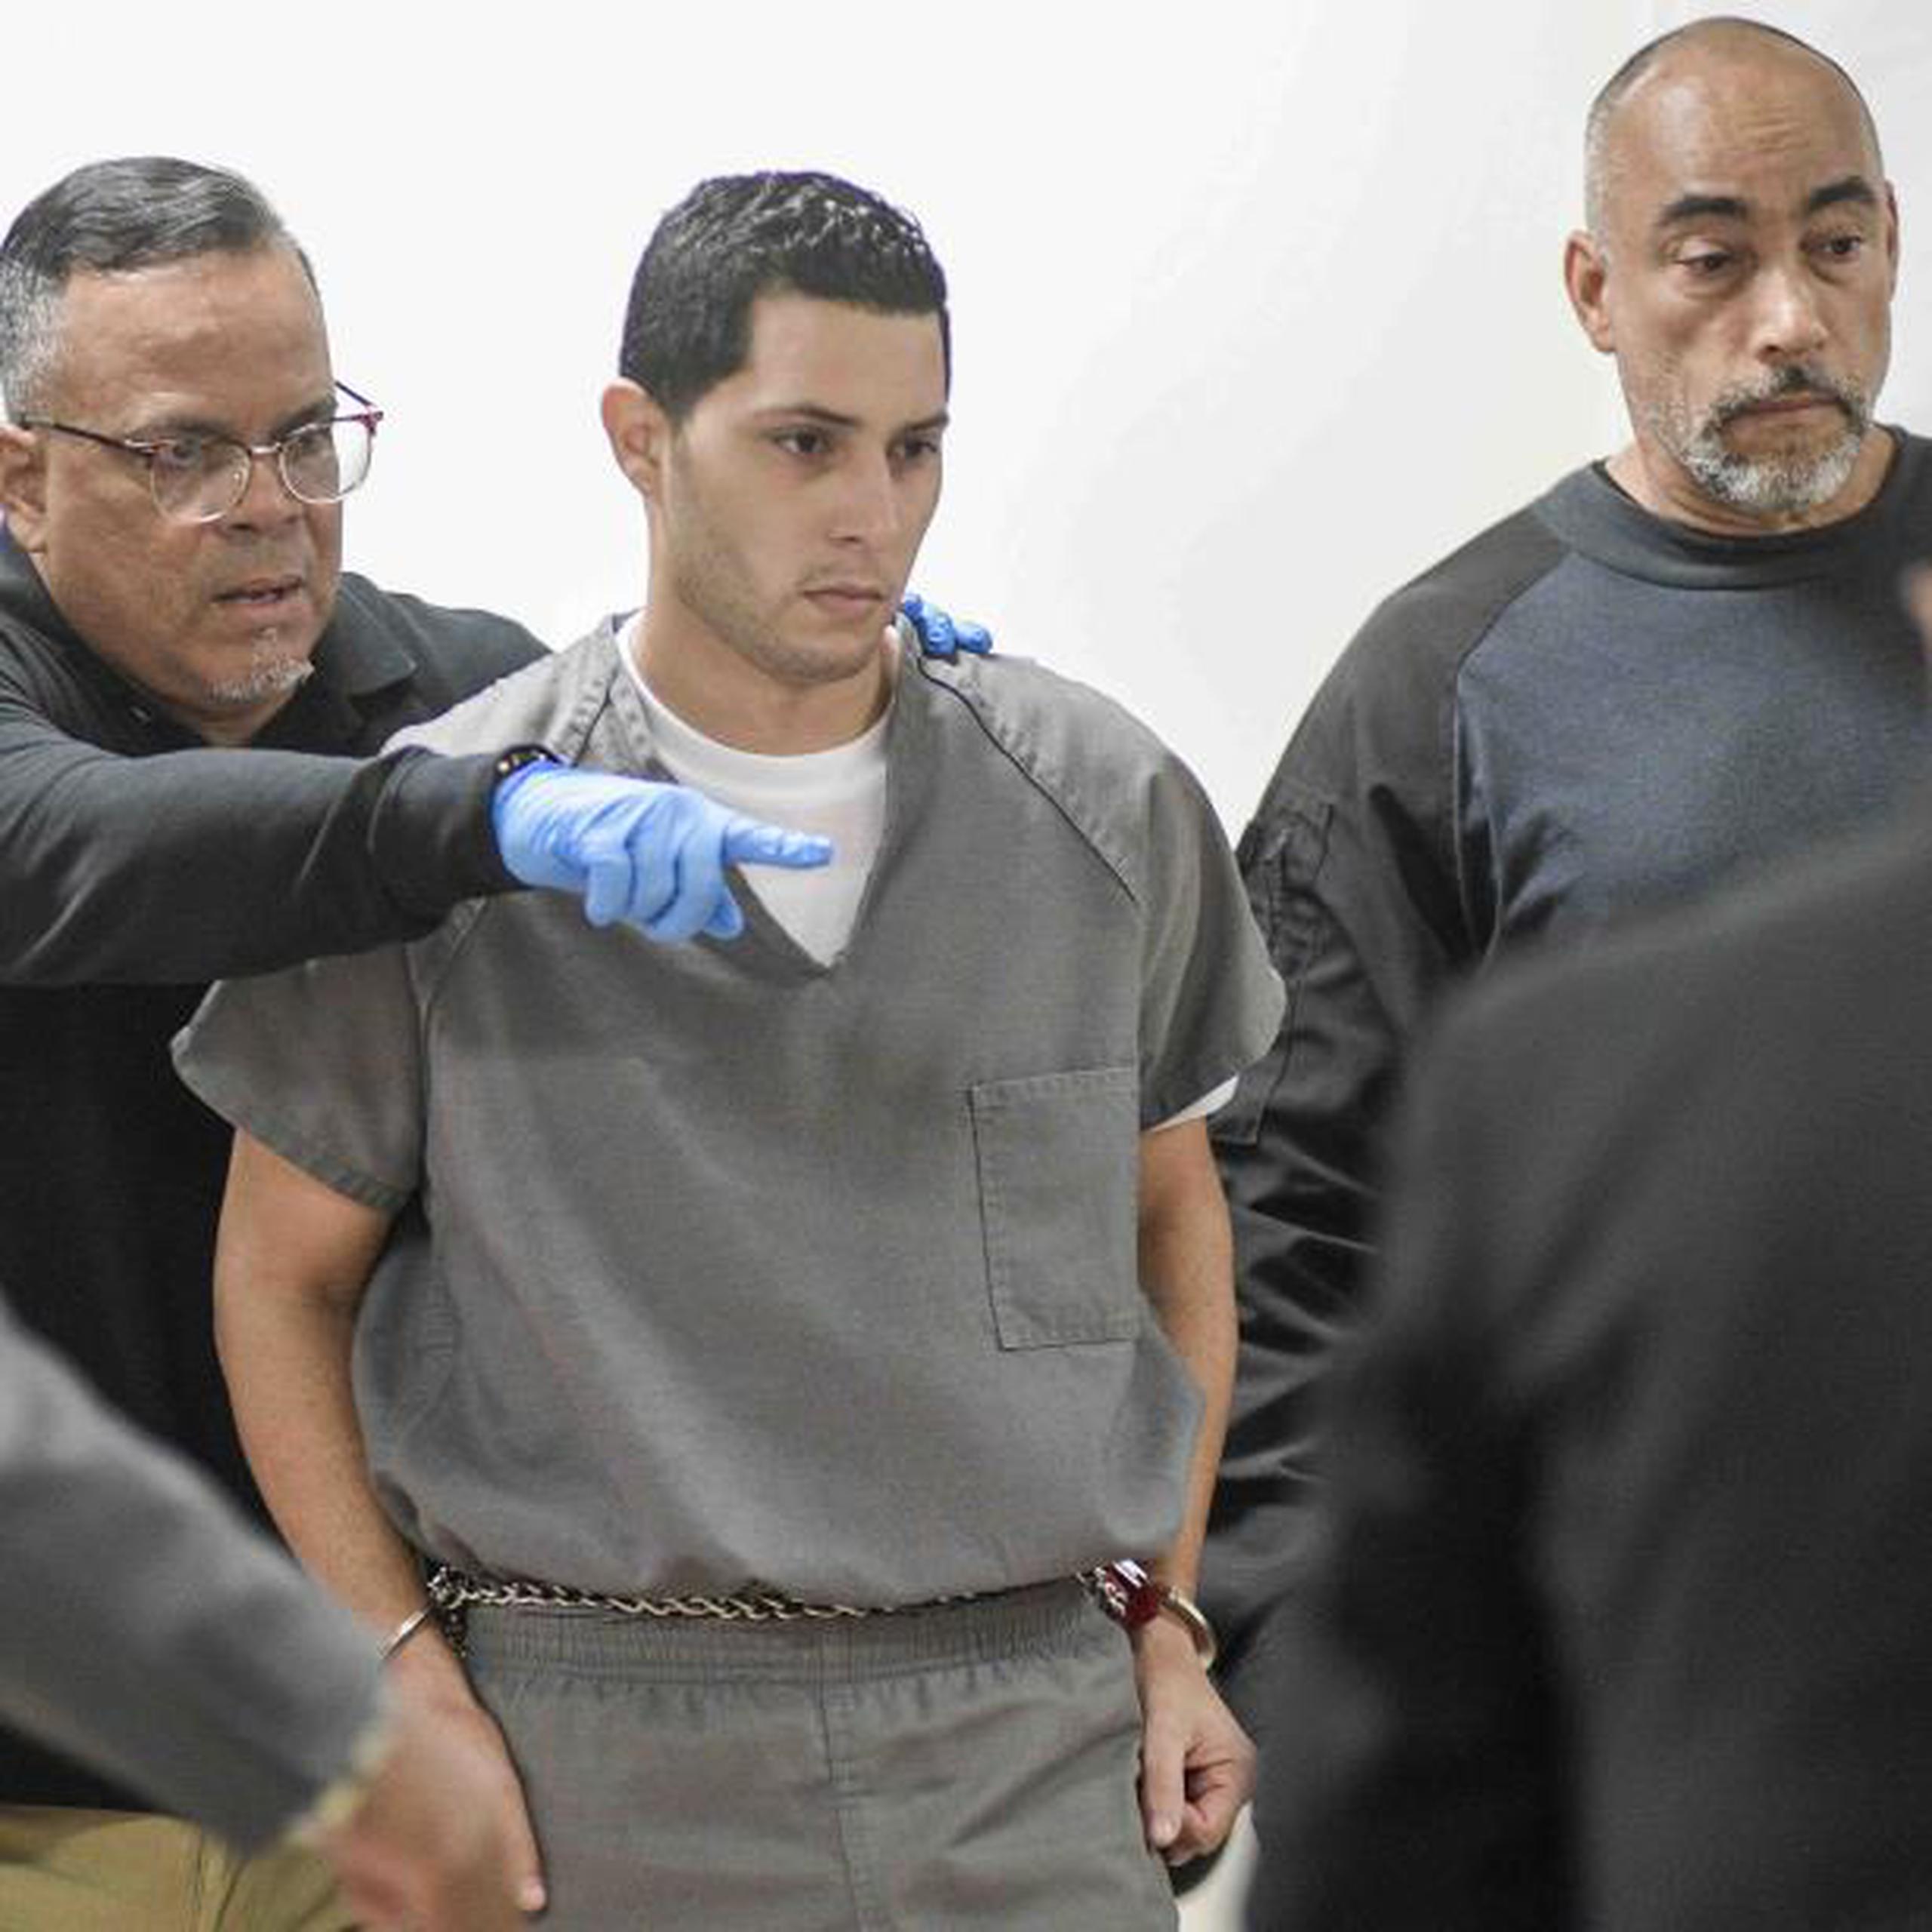 Jensen Medina Cardona fue ubicado en el área de los acusados en el tribunal. (gerald.lopez@gfrmedia.com)